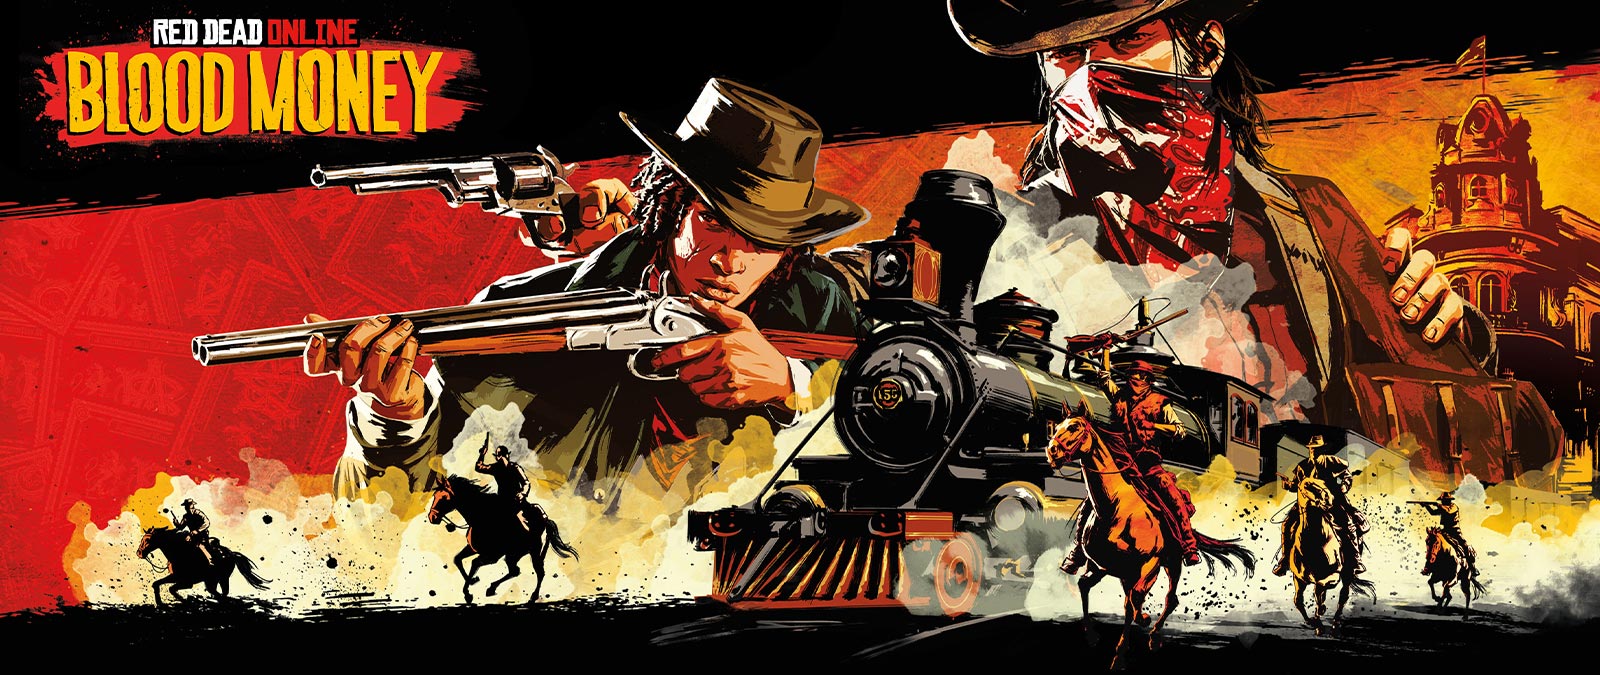 Red Dead Online: Blood Money, вооруженные бандиты на лошадях атакуют поезд.